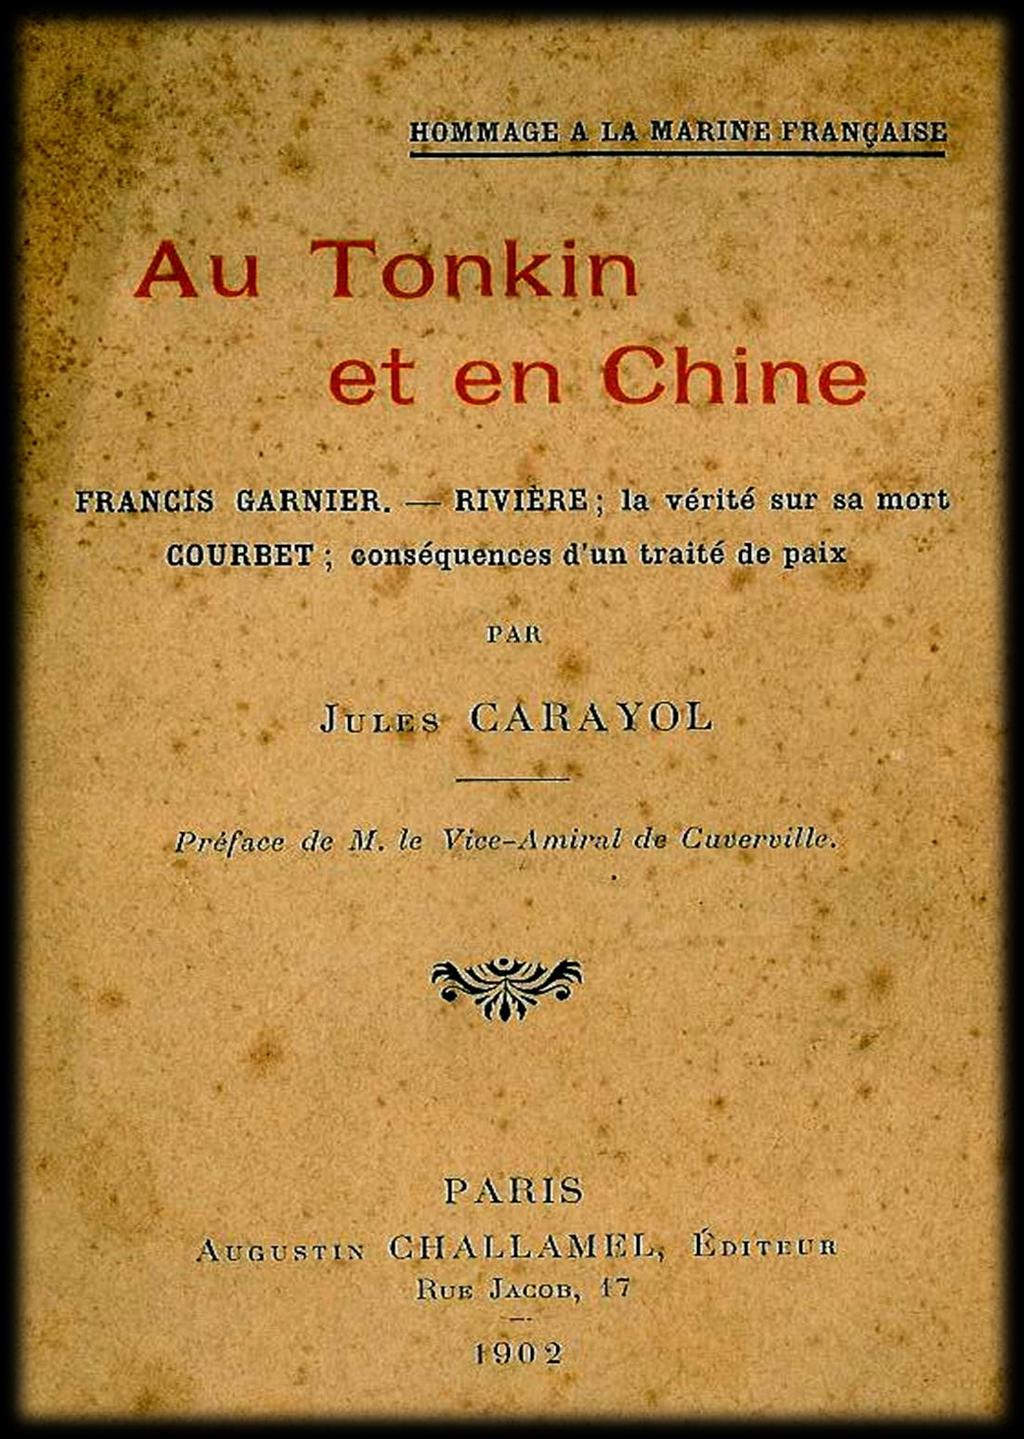 HOMMAGE À LA MARINE FRANÇAISE Livre de 83 pages : «Au Tonkin et en Chine» par Jules Carayol.